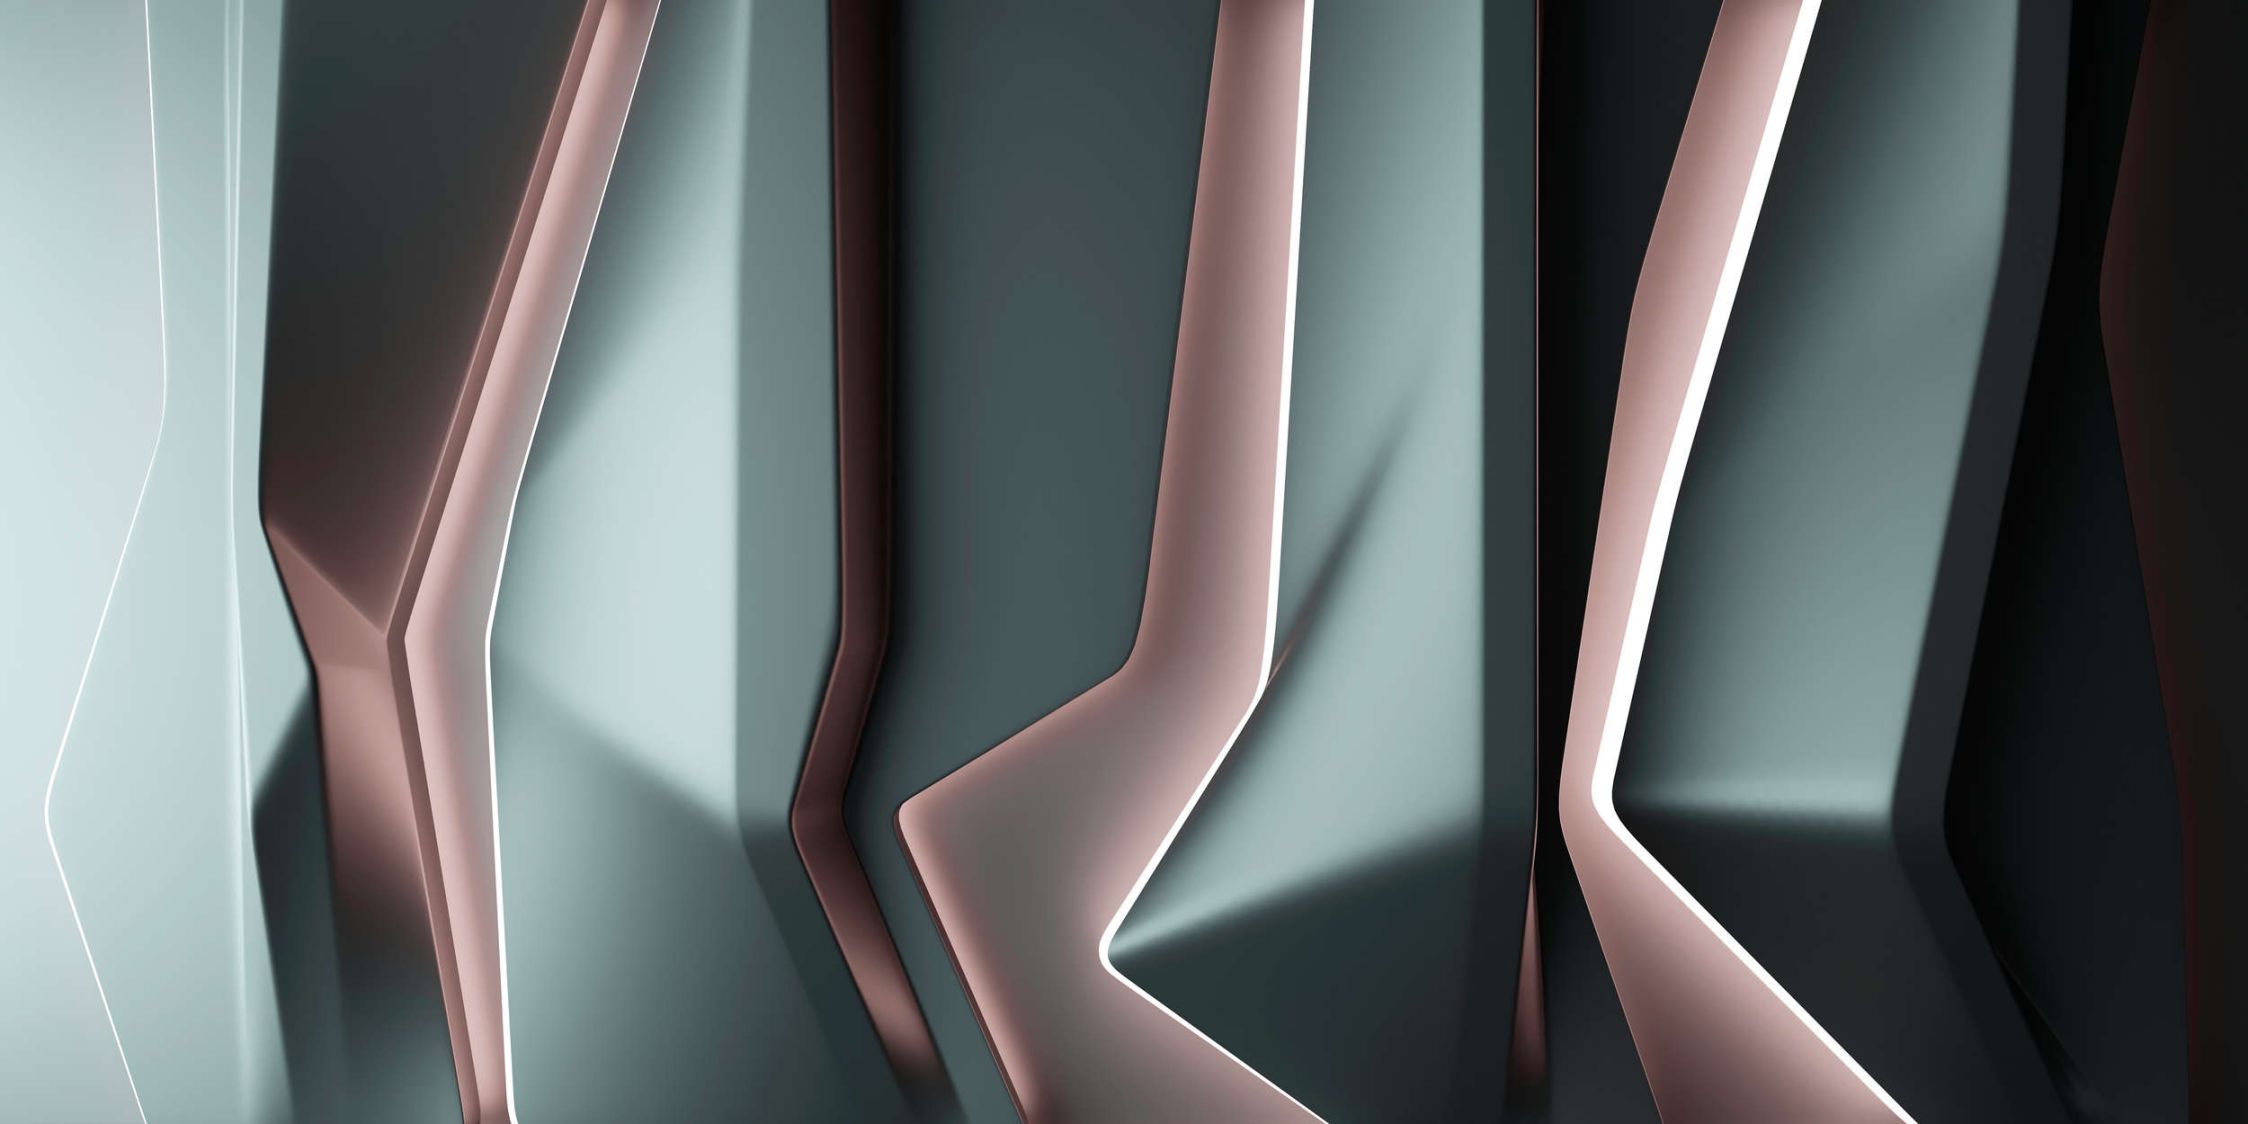             platinum 1 - Digital behang »in een futuristisch lijnenspel - Gladde, licht parelmoerachtige vliesstof
        